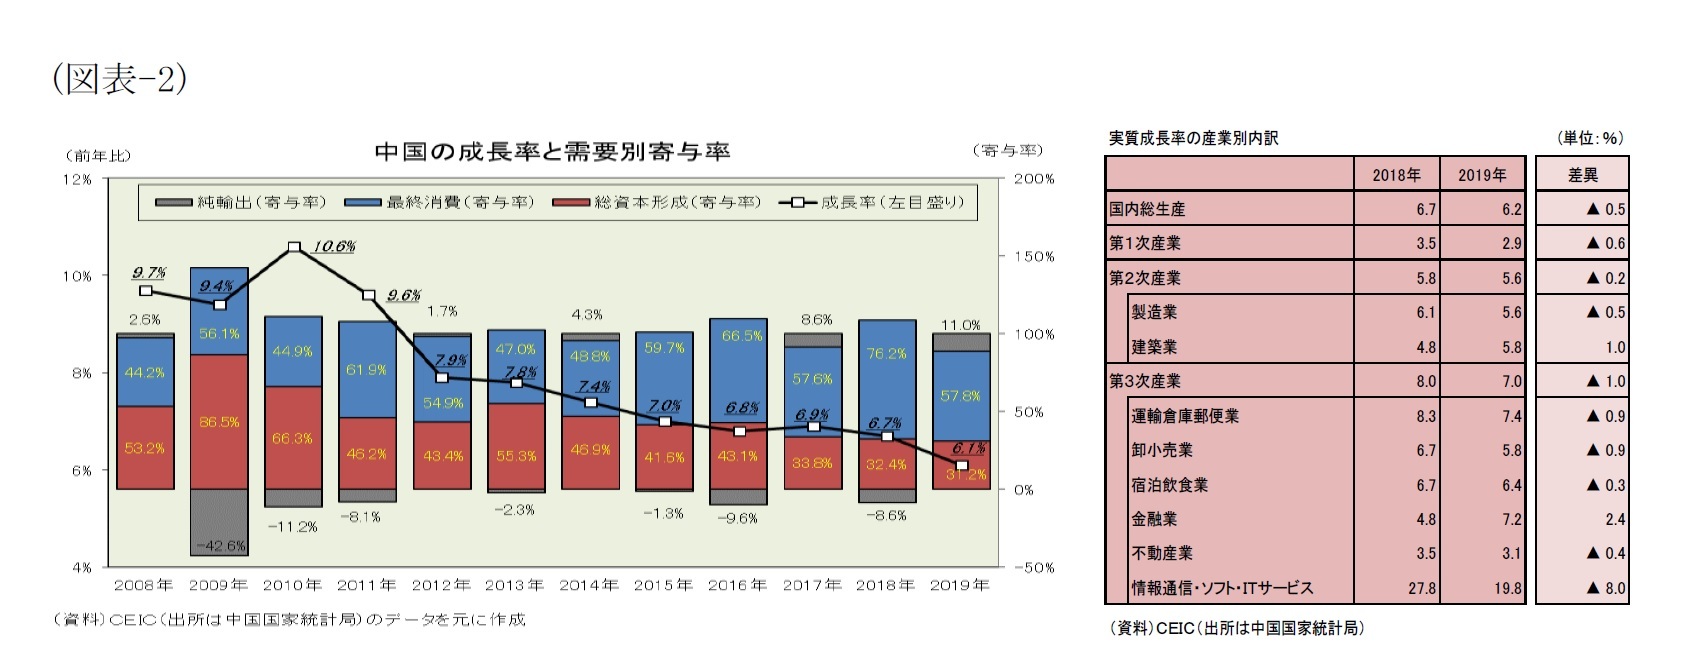 （図表-2）中国の成長率と需要別寄与度/実質成長率の産業別内訳